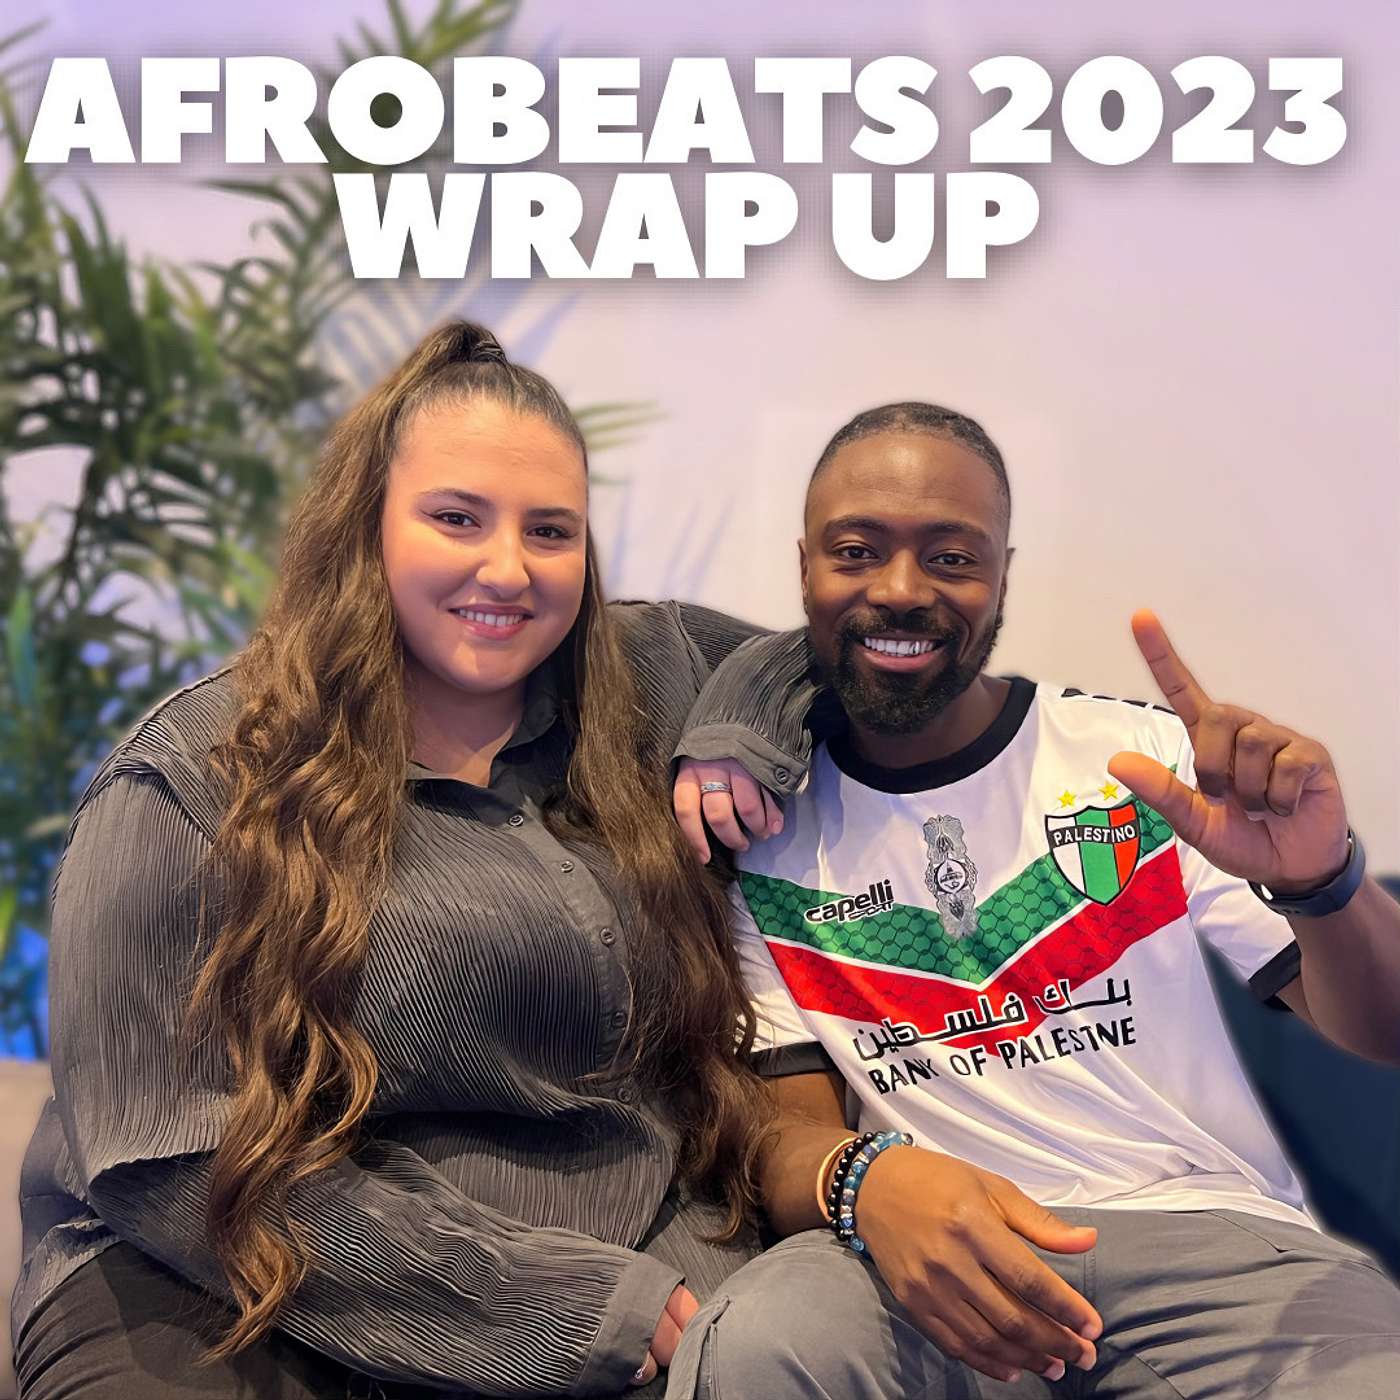 Afrobeats 2023 Wrap Up